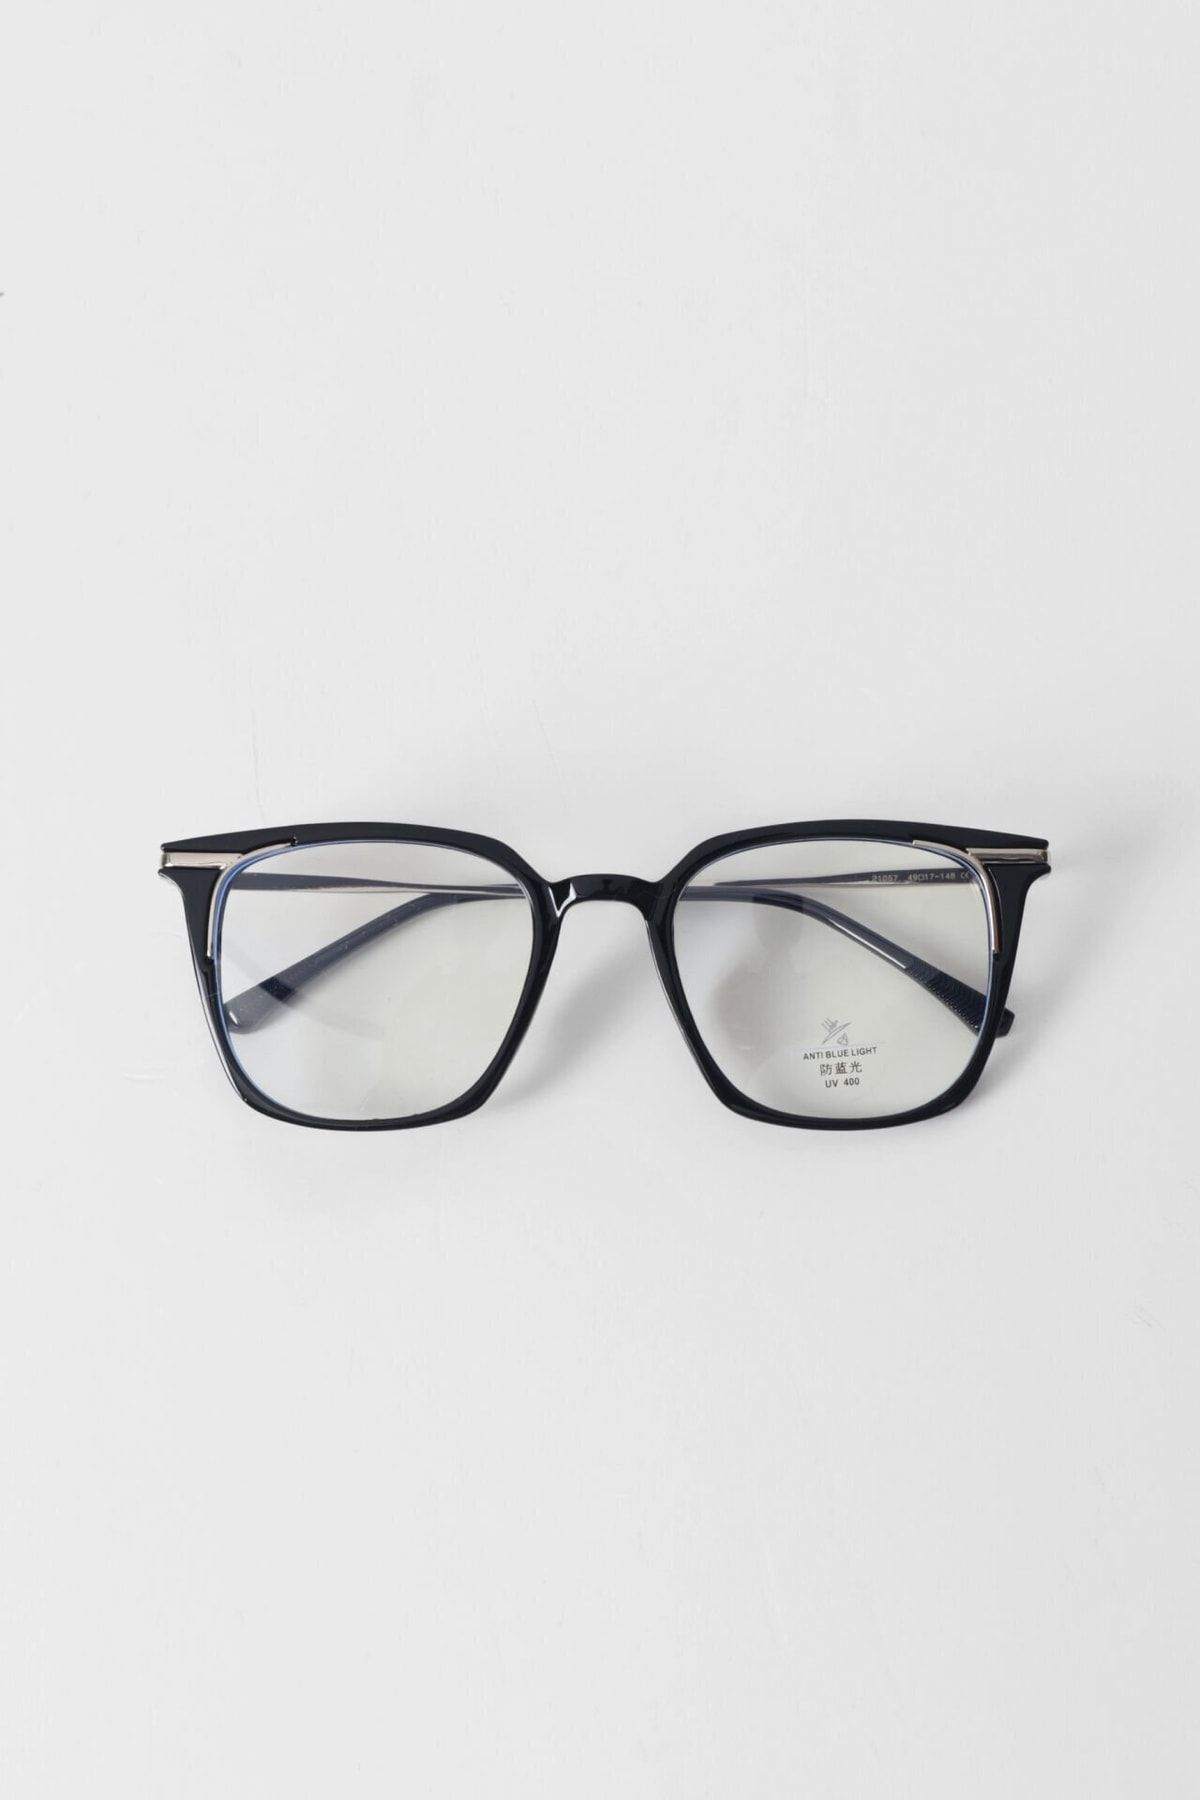 Kapin Cateye Mavi Işık Filtreli Gözlük - Siyah Çerçeve Mavi Işık Koruyucu Gözlük